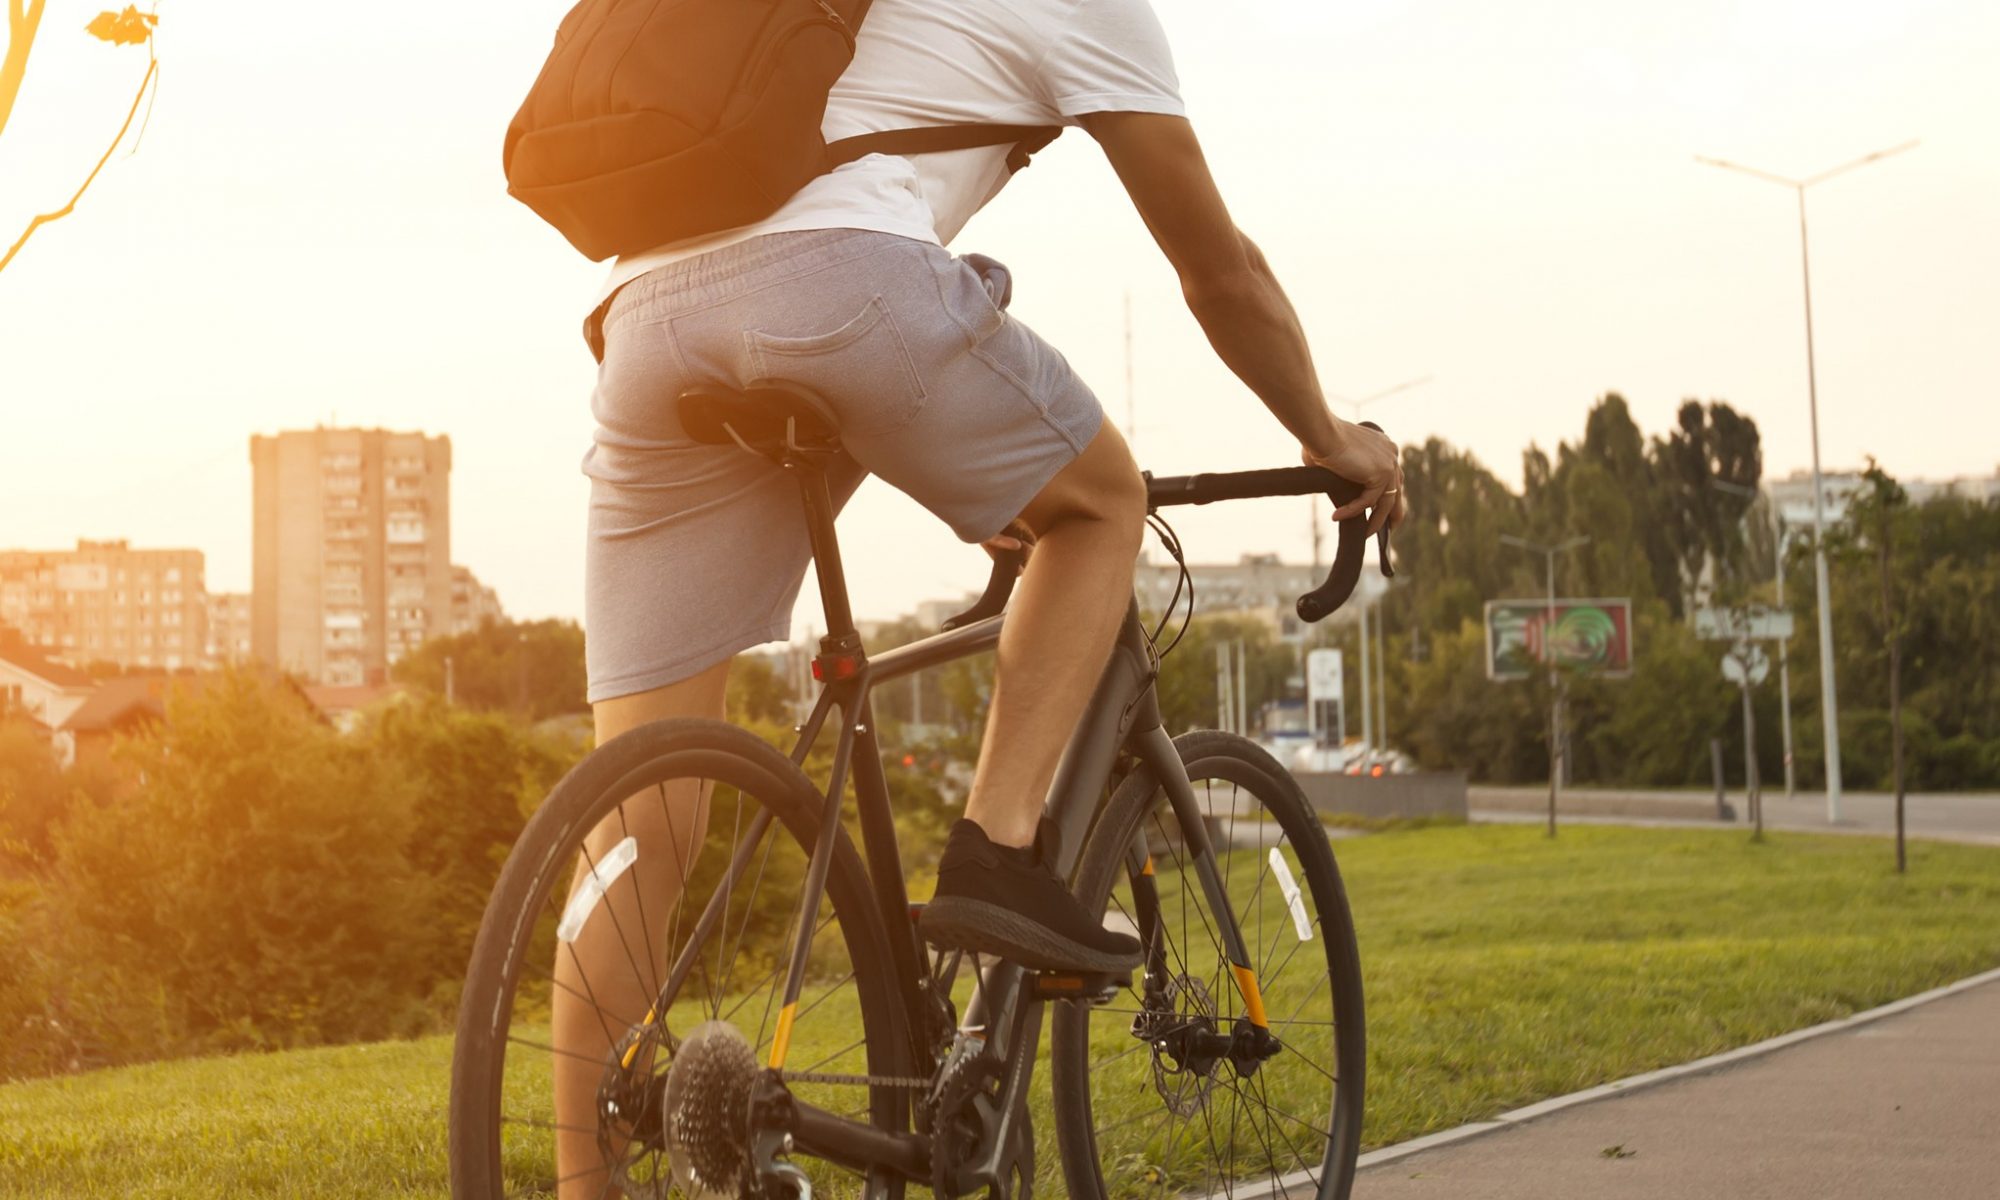 (Français) Le vélo : comment se reconnecter avec les plaisirs simples de la vie